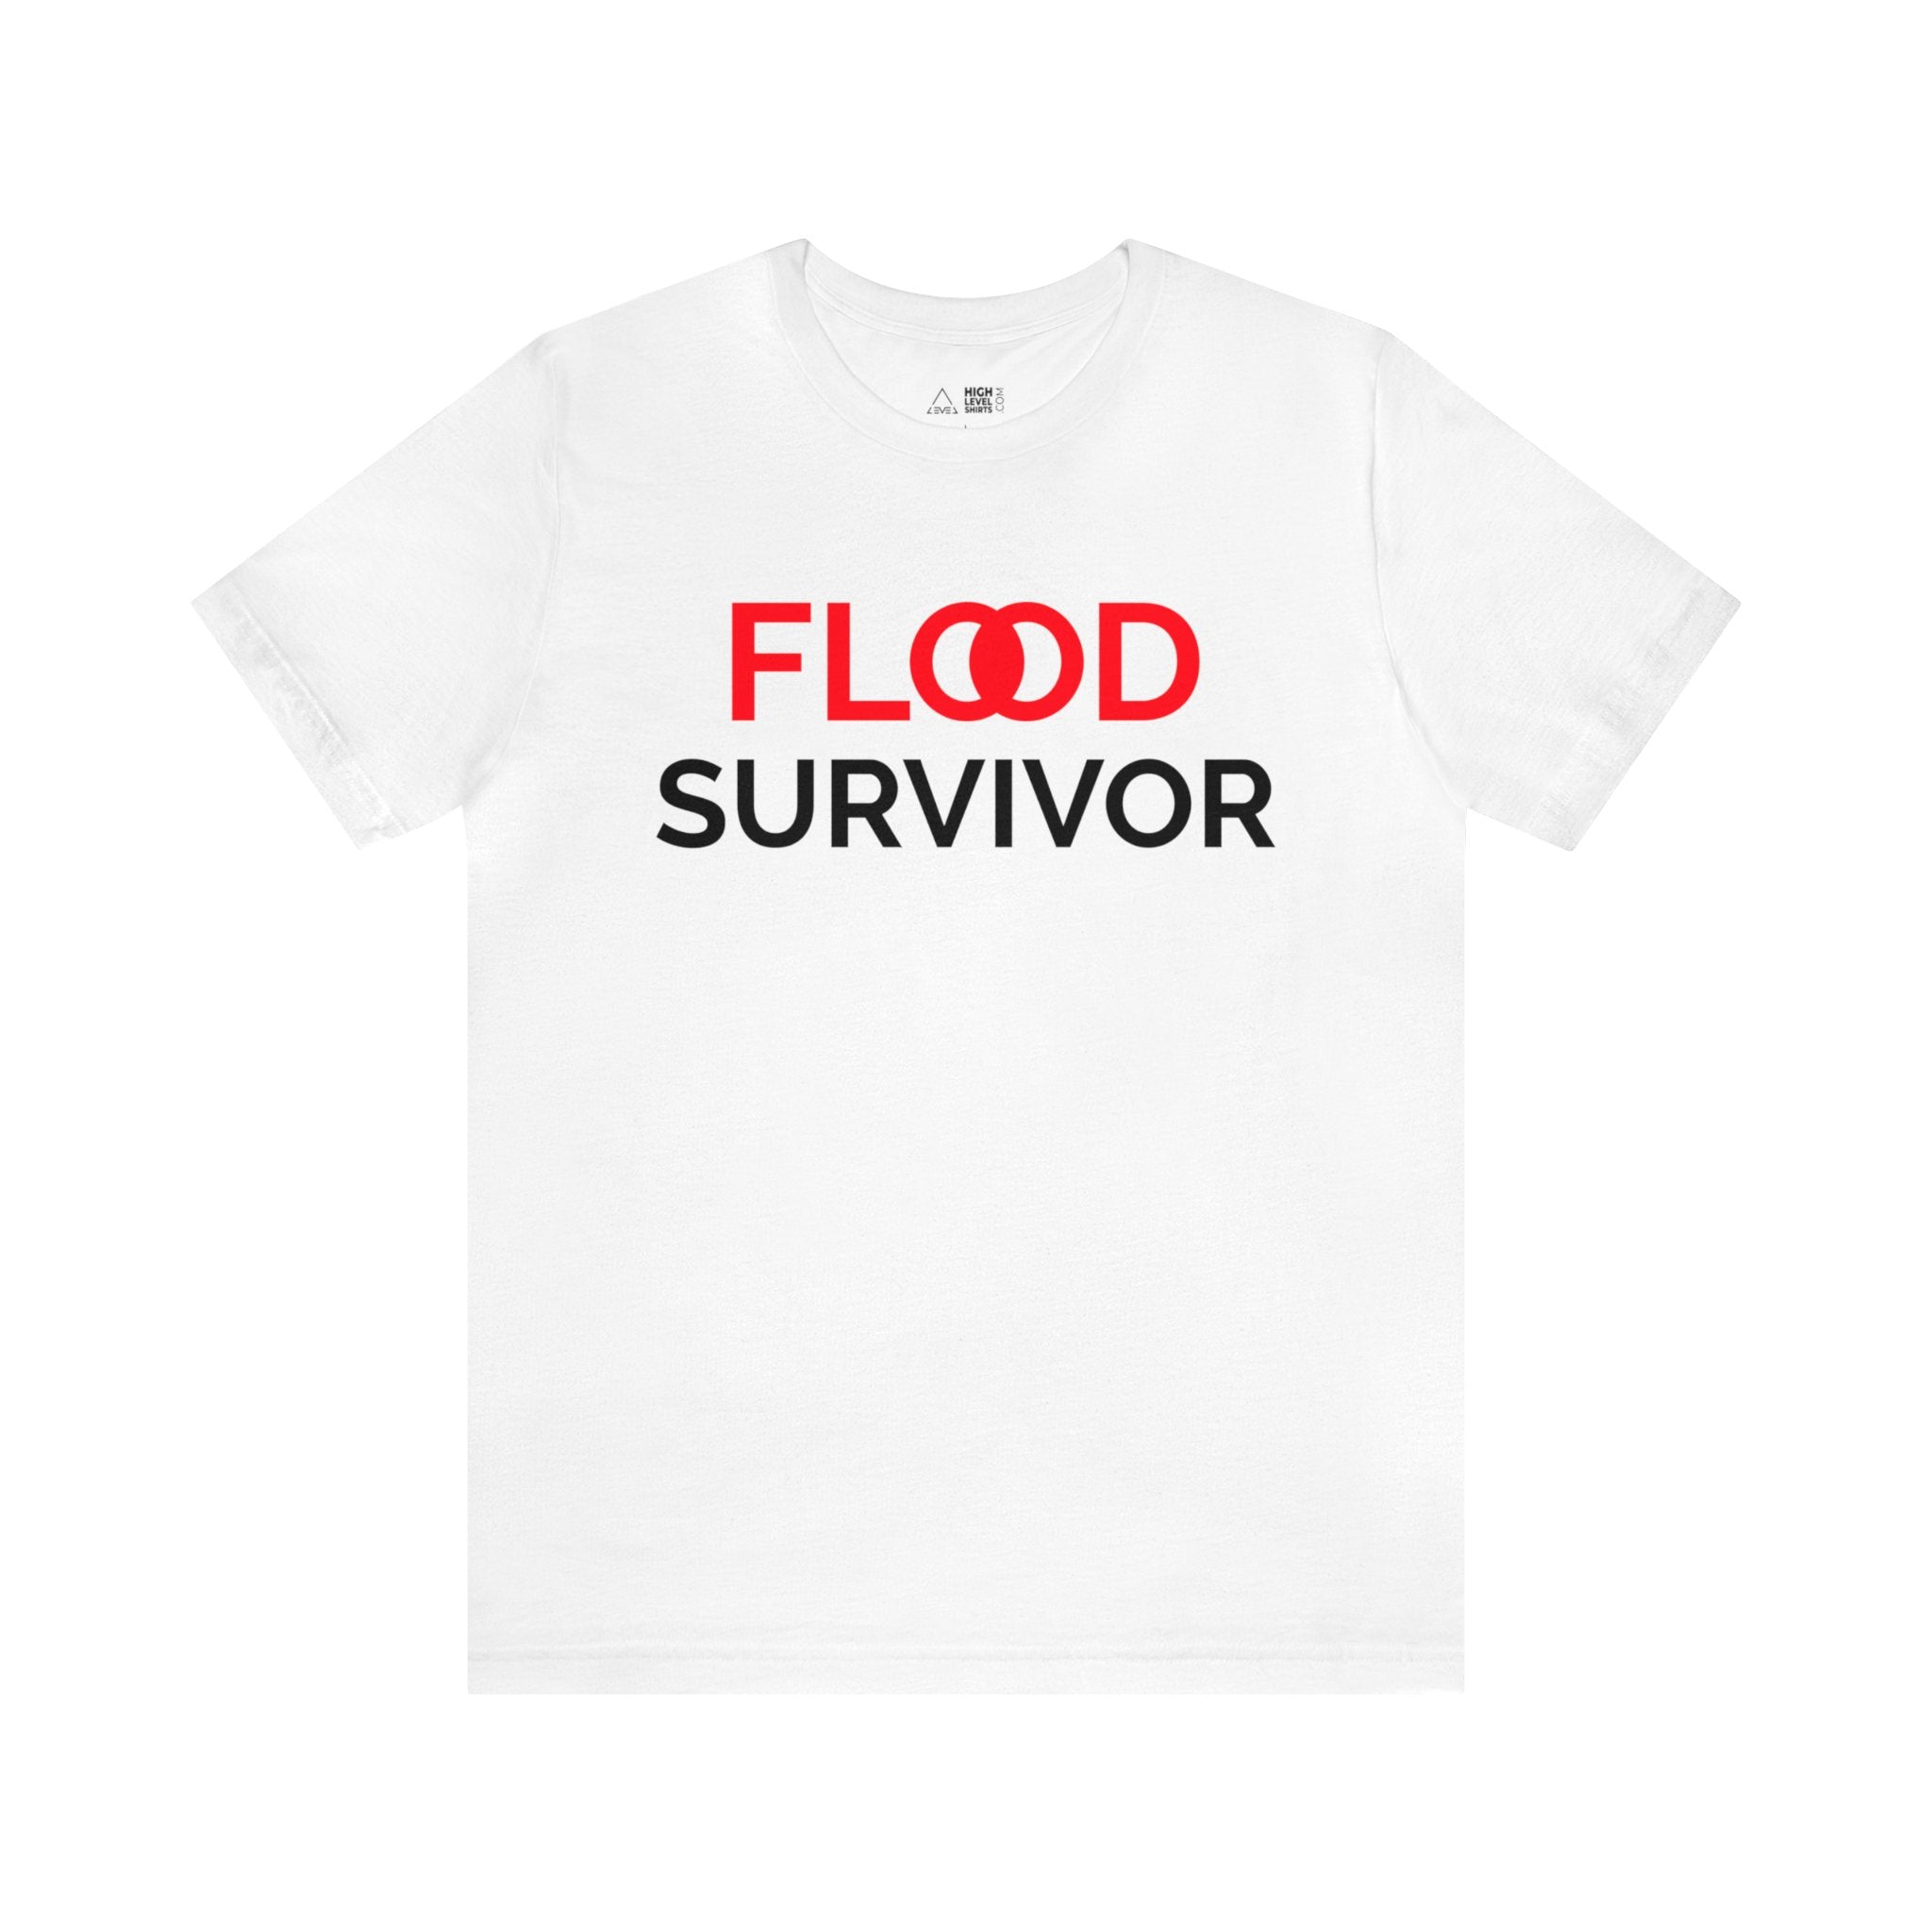 Flood Survivor